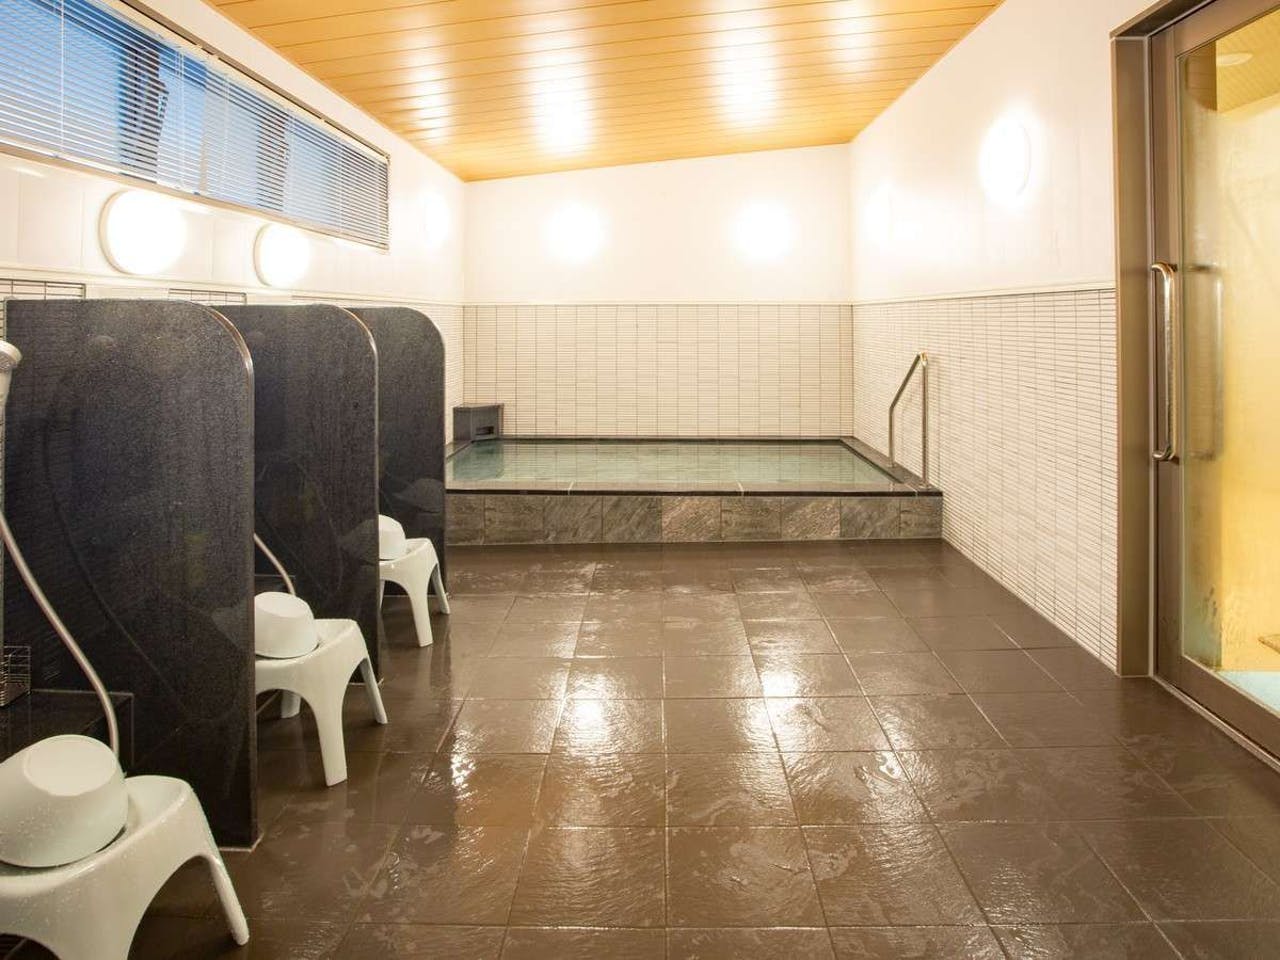 ห้องอาบน้ำ Bathroom Onsen บ่อน้ำพุร้อน